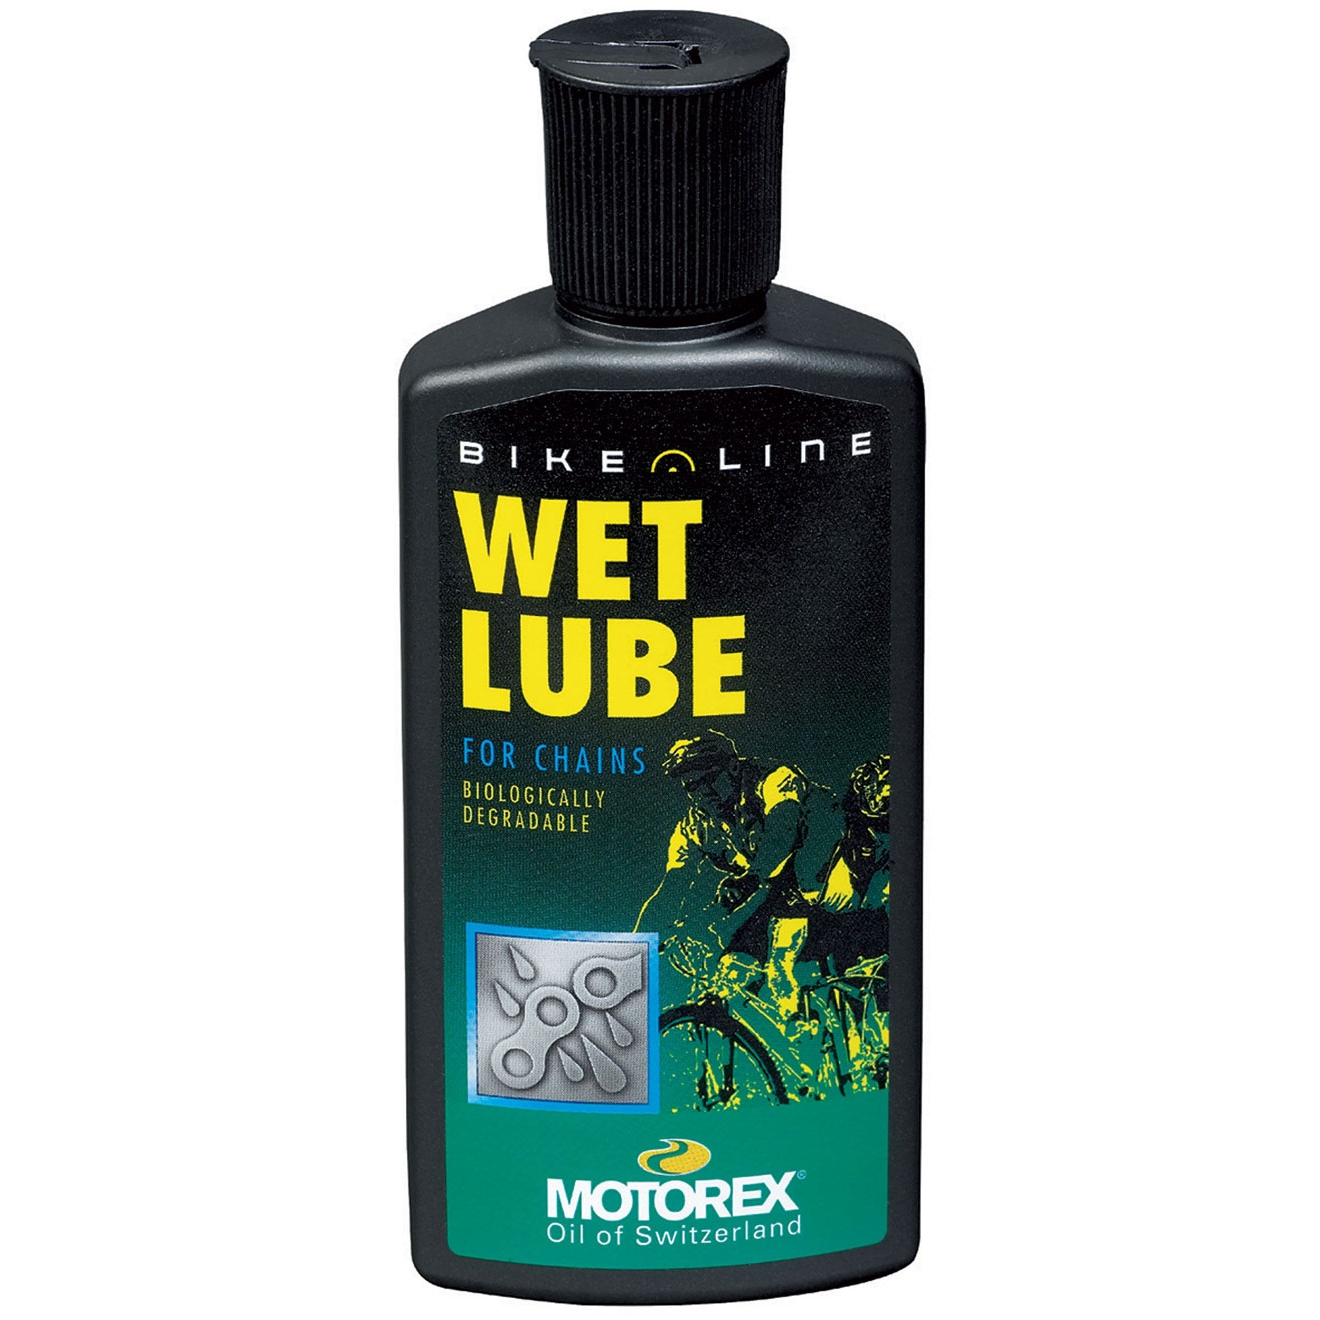 Motorex Wet Chain Lube / Oil 100ml / 3.5 fl.oz